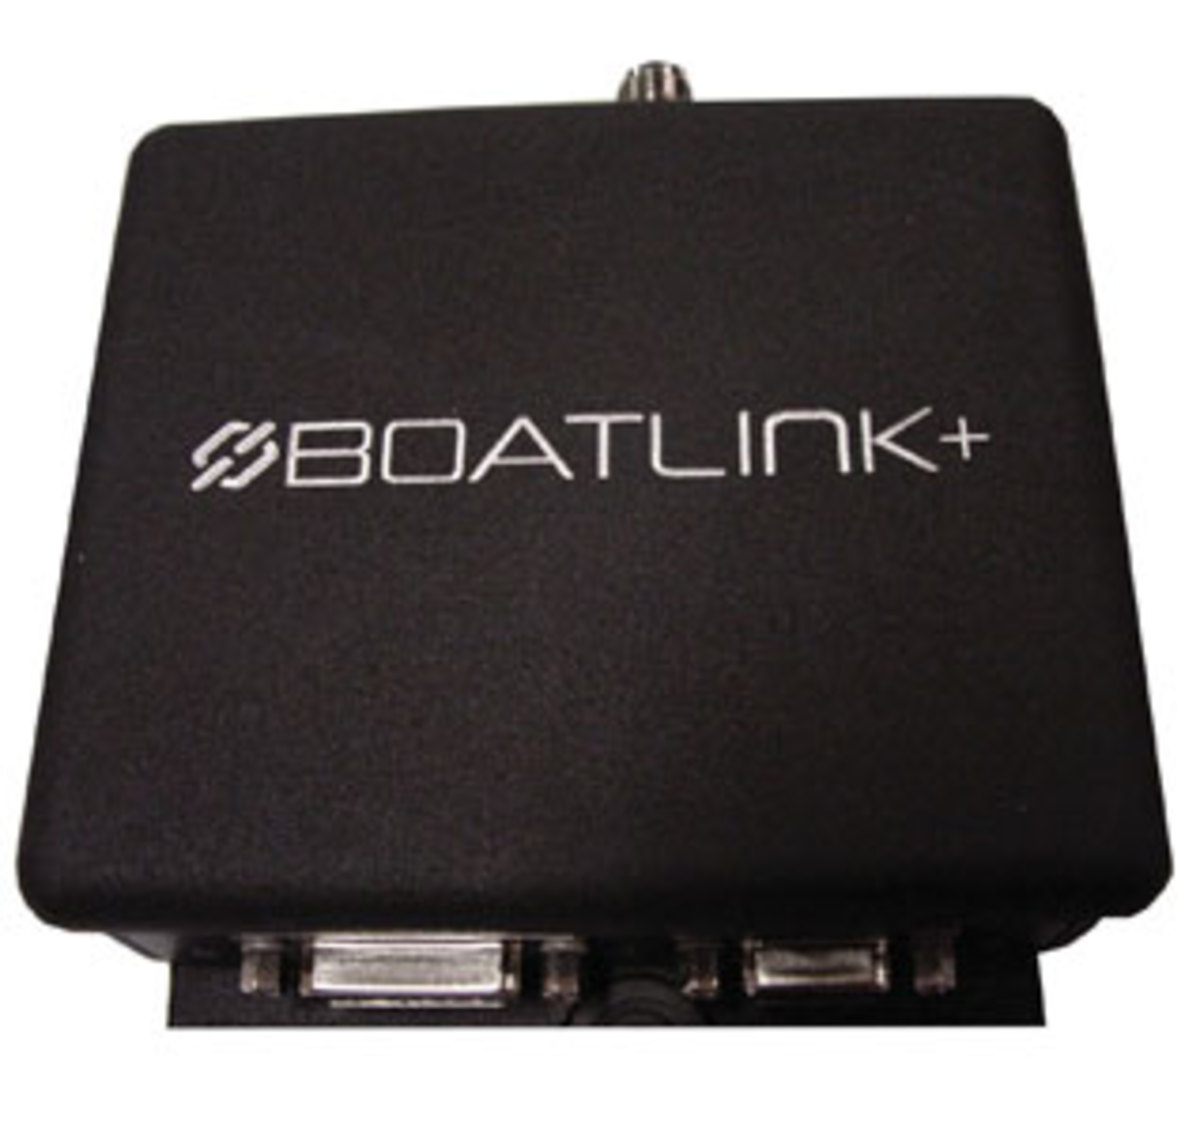 BoatLink+ Boat Monitoring System